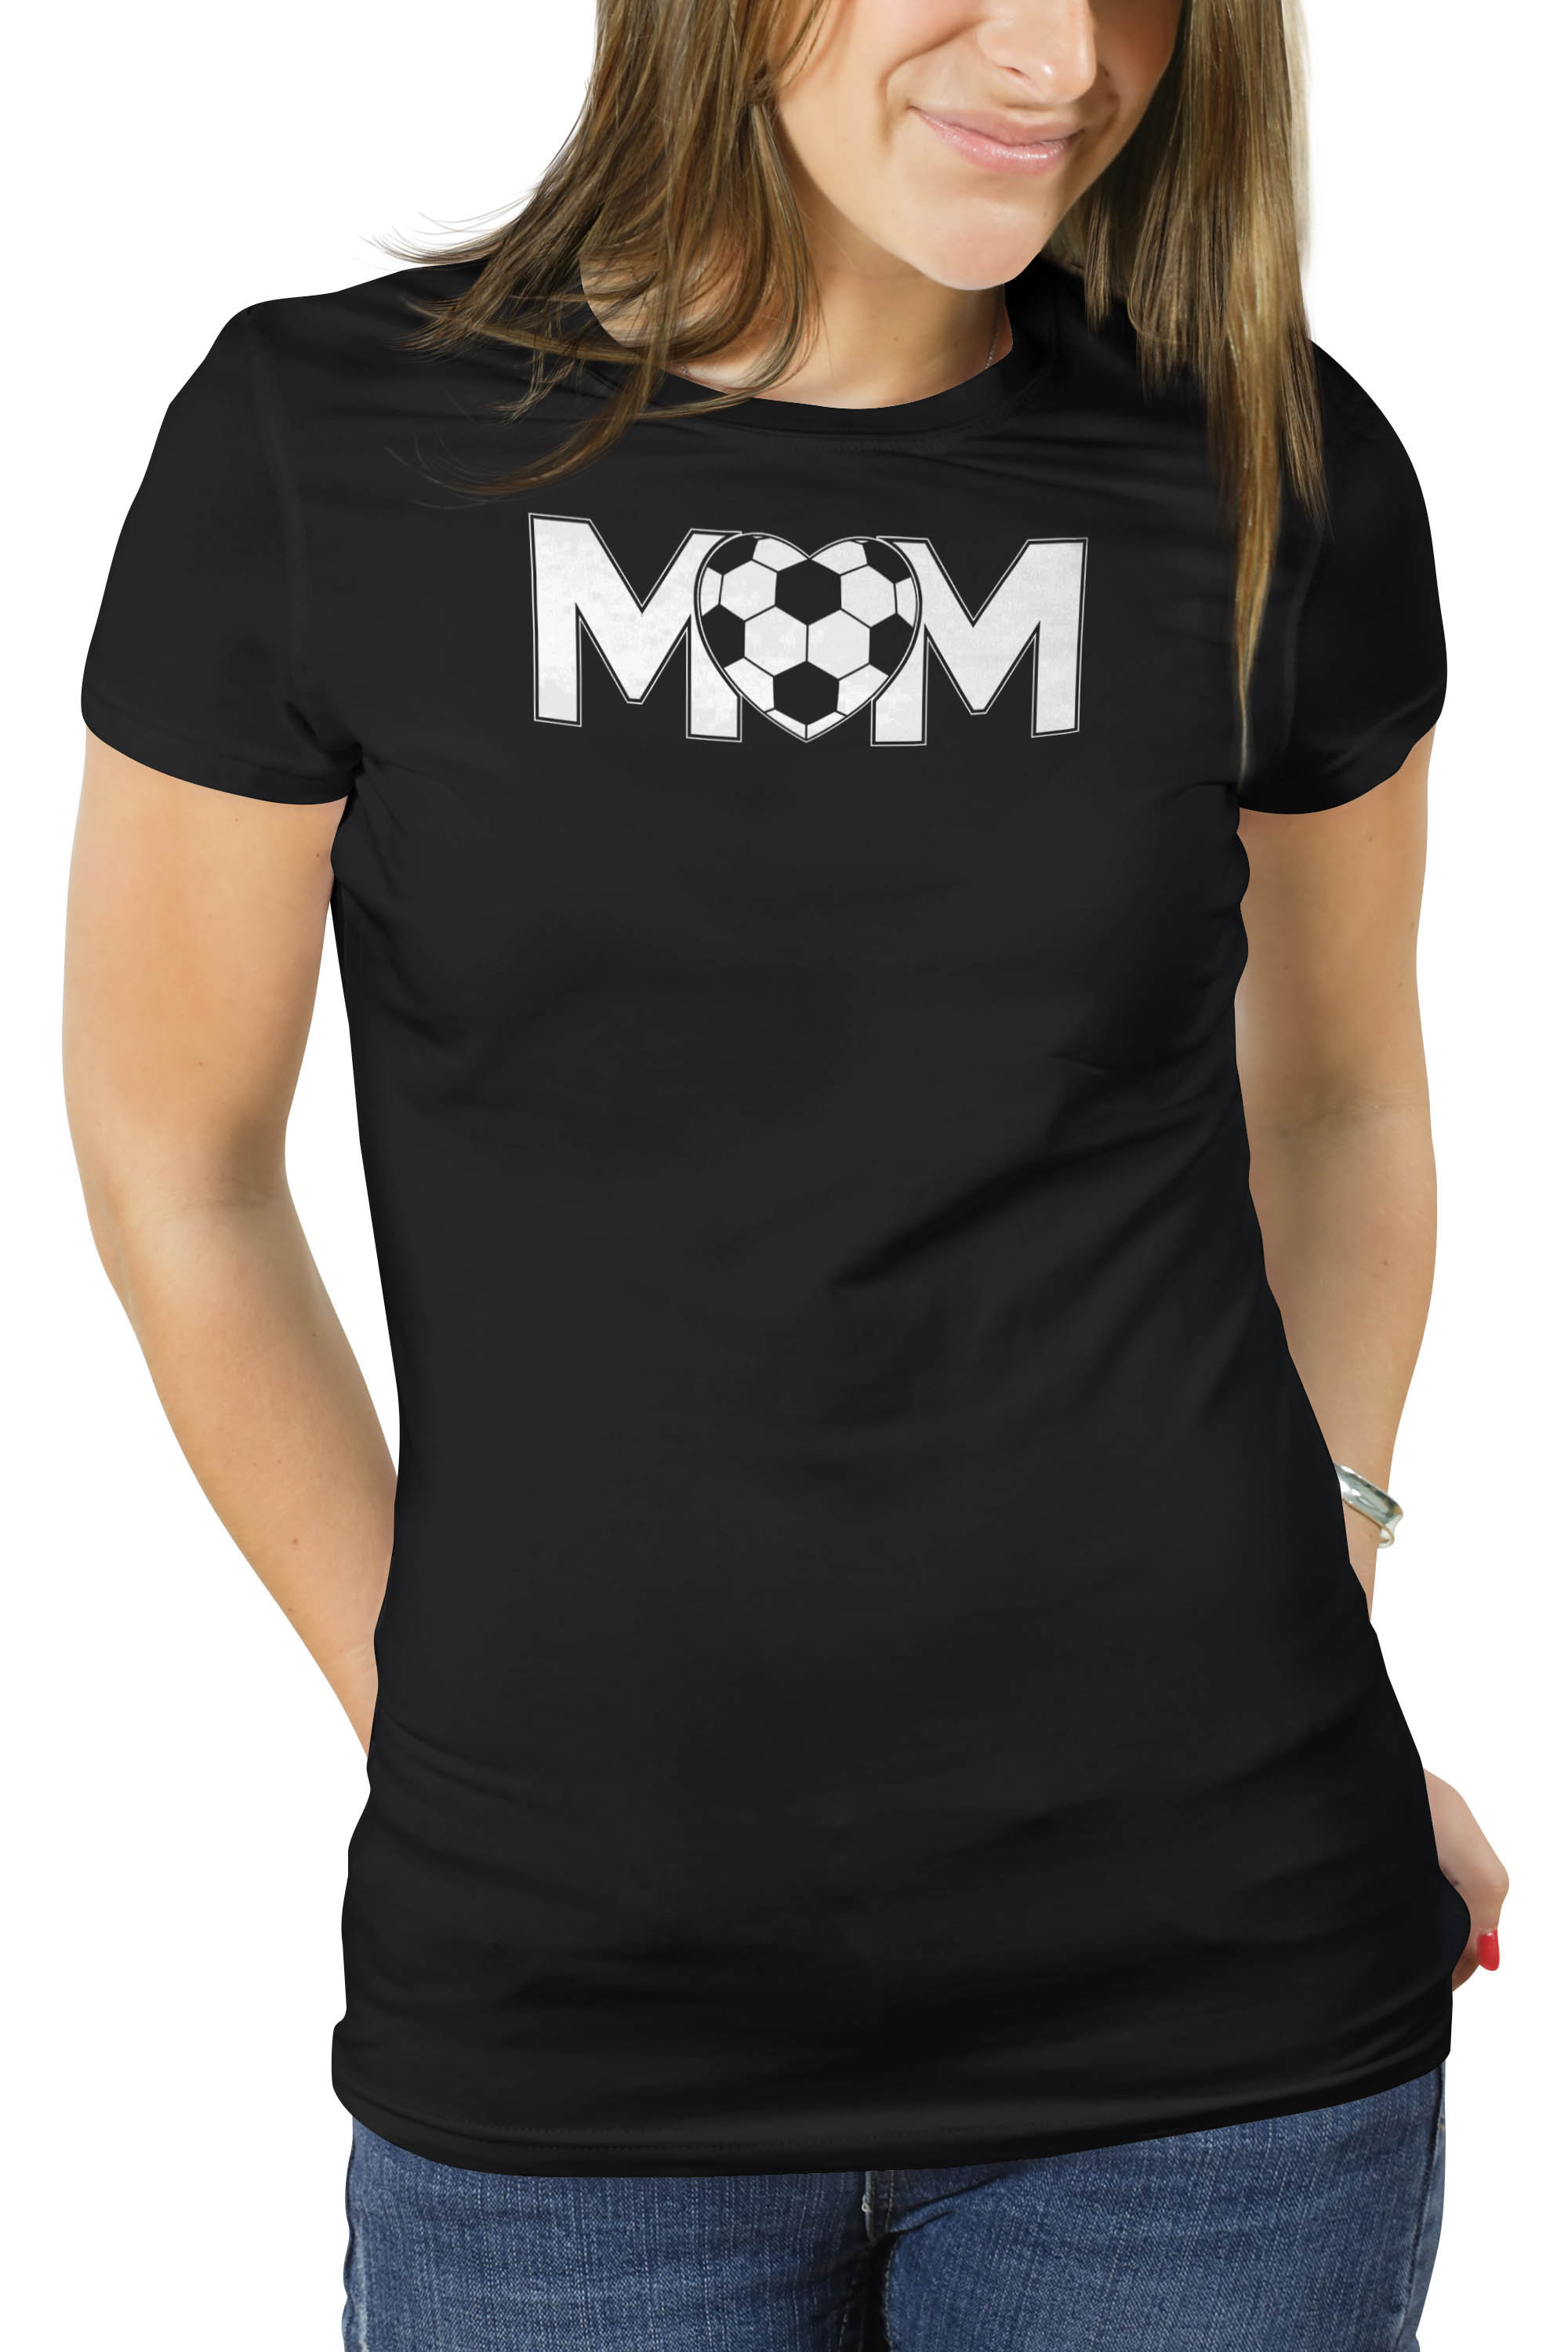 Soccer Mom Shirt Soccer Mom Mom S Soccer Shirt Proud Soccer Mom Soccer Mama Soccer Mom